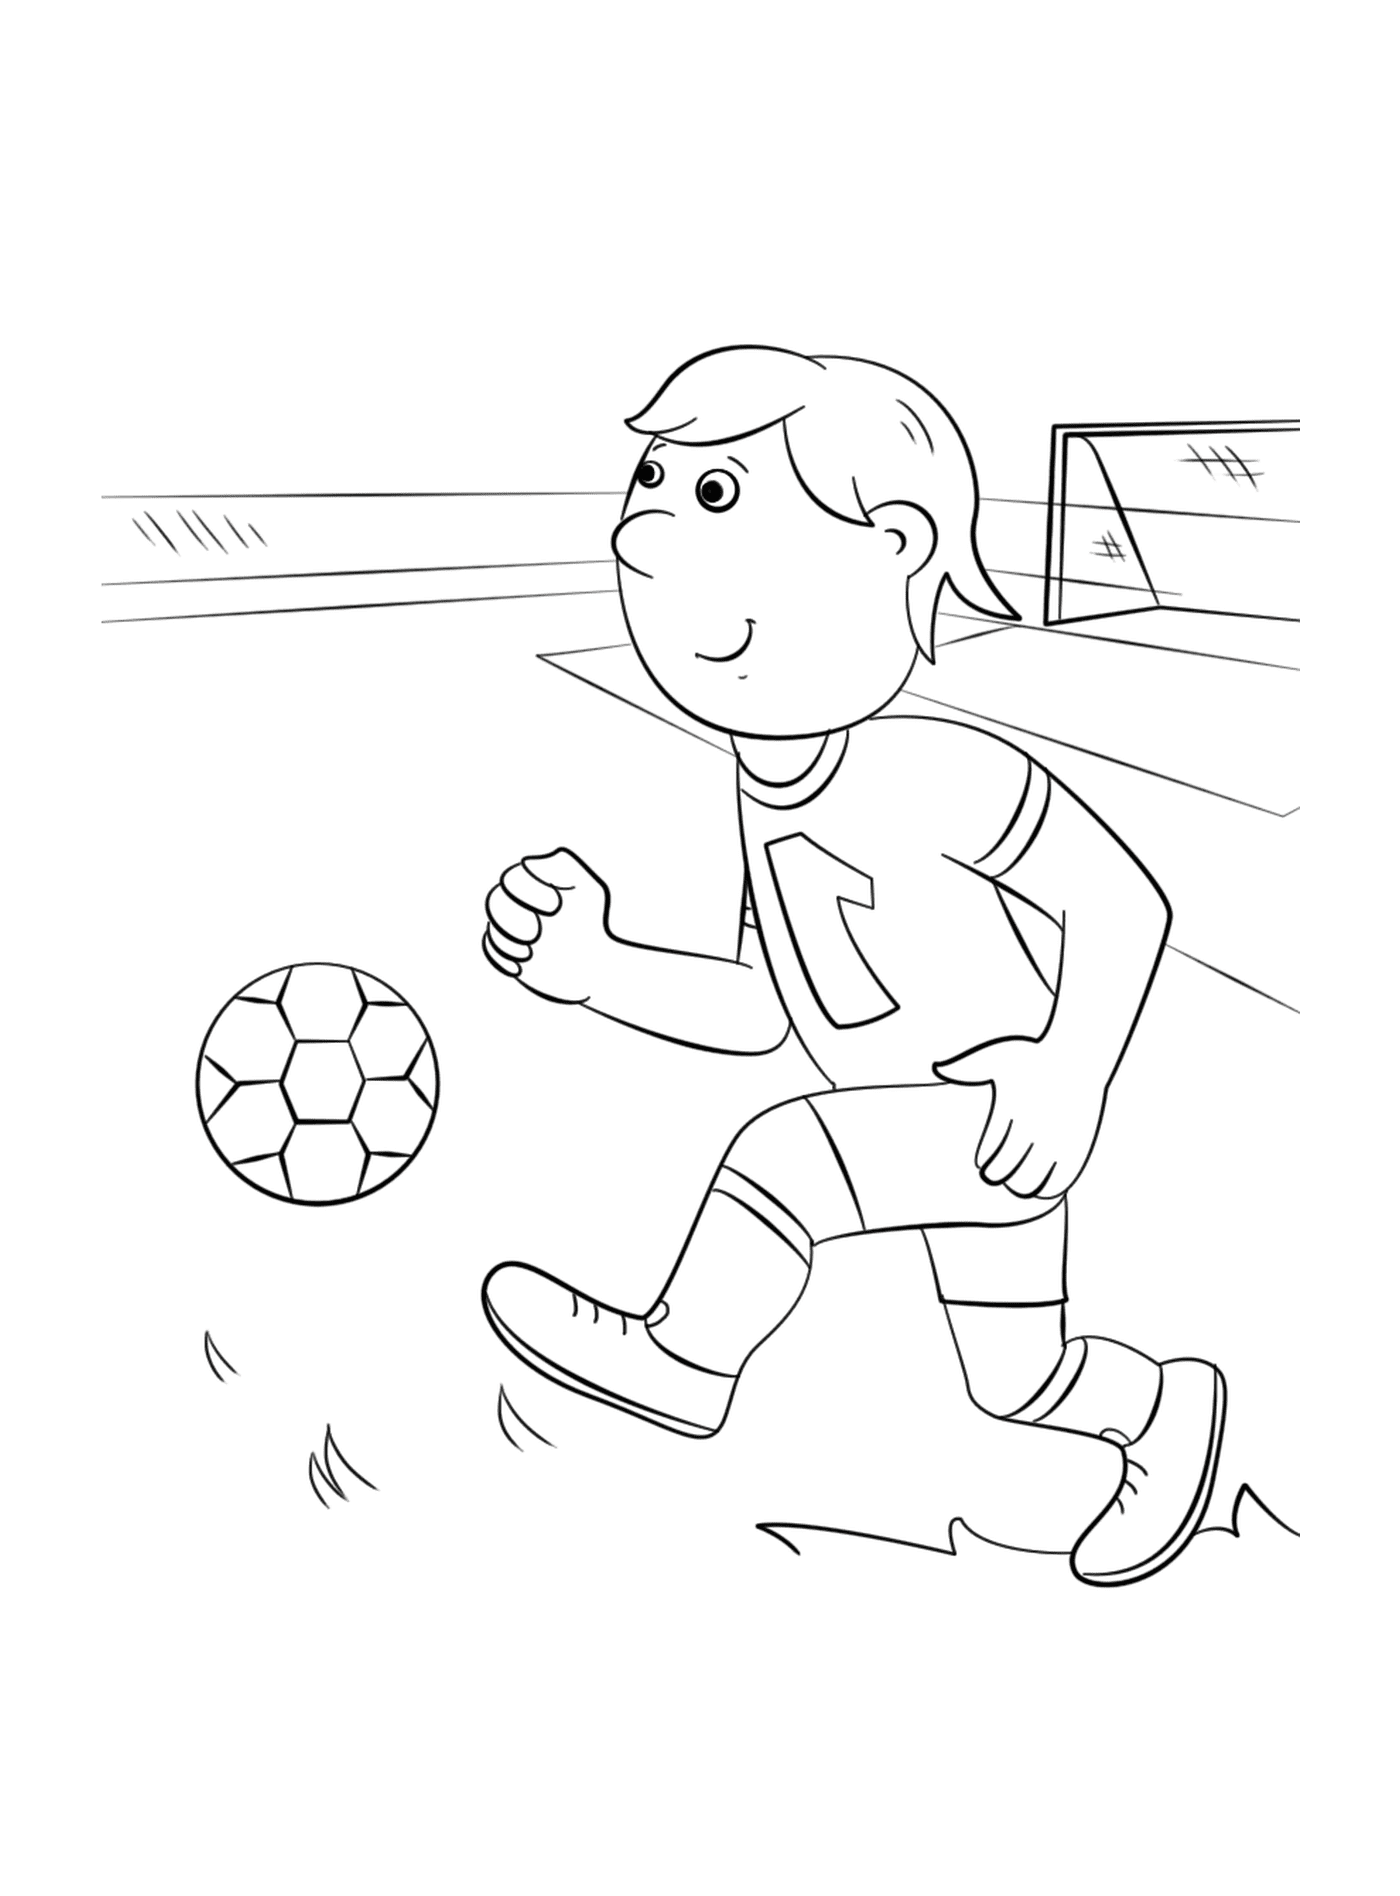  Un ragazzo che gioca a football 